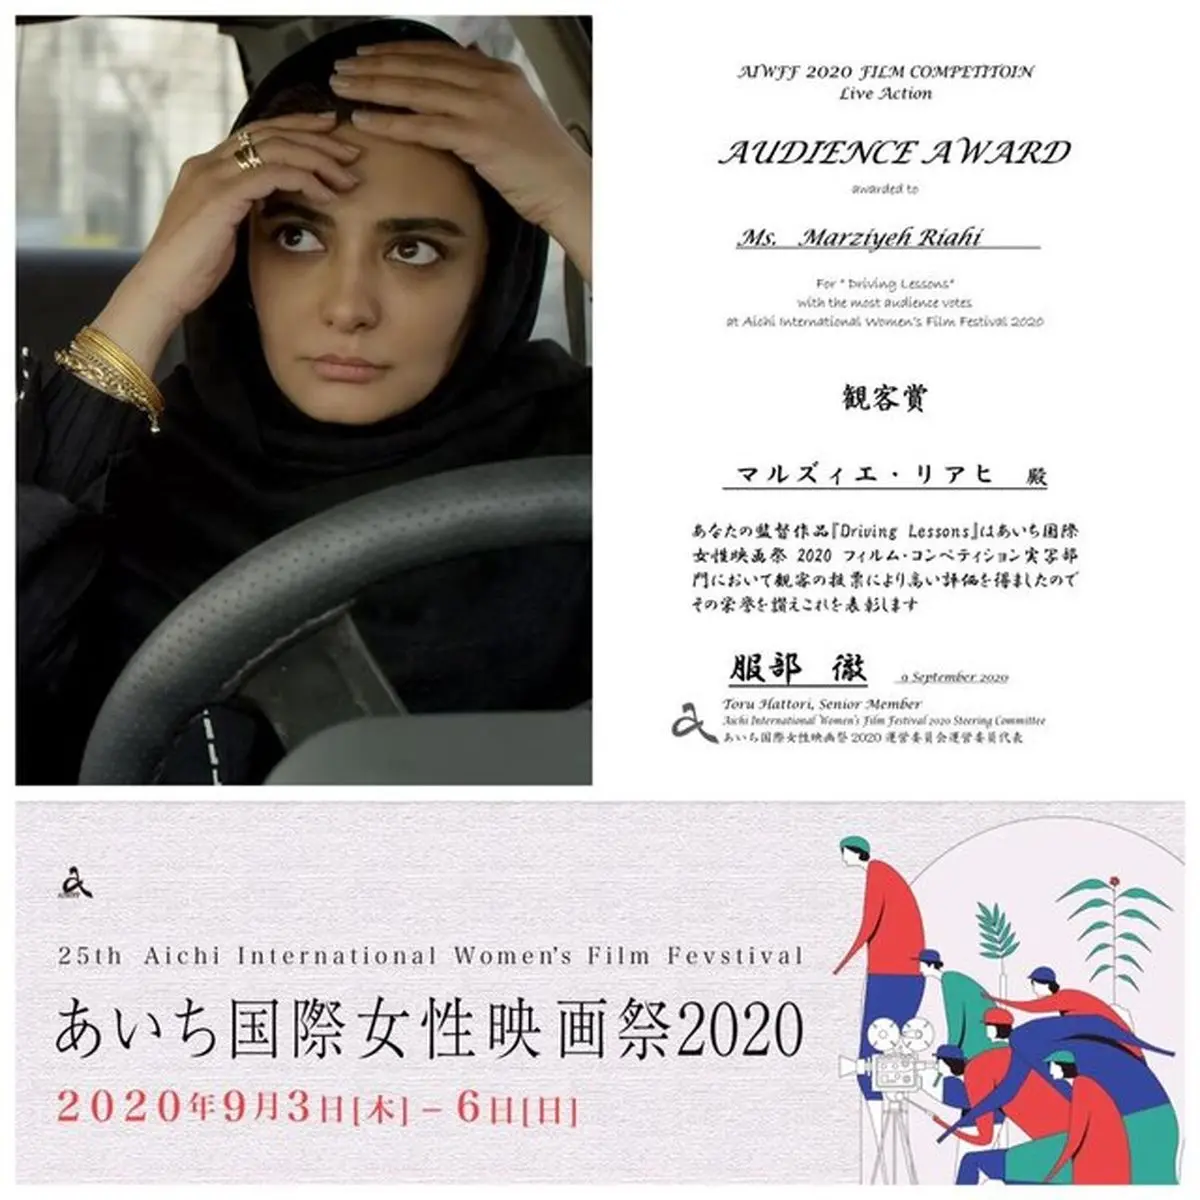 
"کلاس رانندگی" از جشنواره ژاپنی جایزه گرفت
